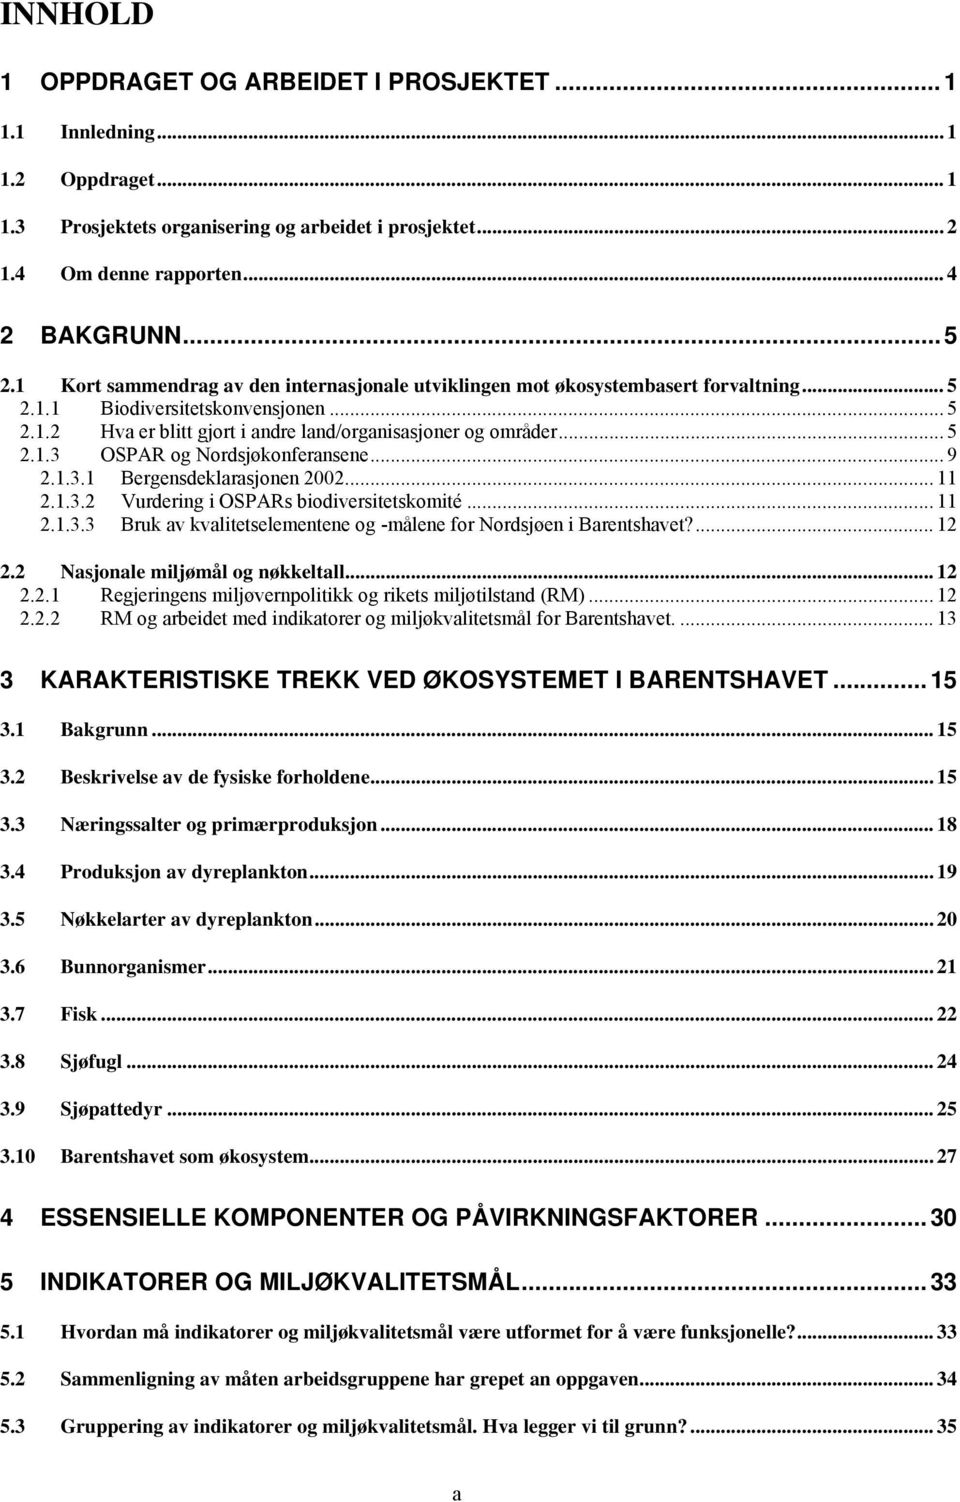 .. 9 2.1.3.1 Bergensdeklarasjonen 2002... 11 2.1.3.2 Vurdering i OSPARs biodiversitetskomité... 11 2.1.3.3 Bruk av kvalitetselementene og -målene for Nordsjøen i Barentshavet?... 12 2.